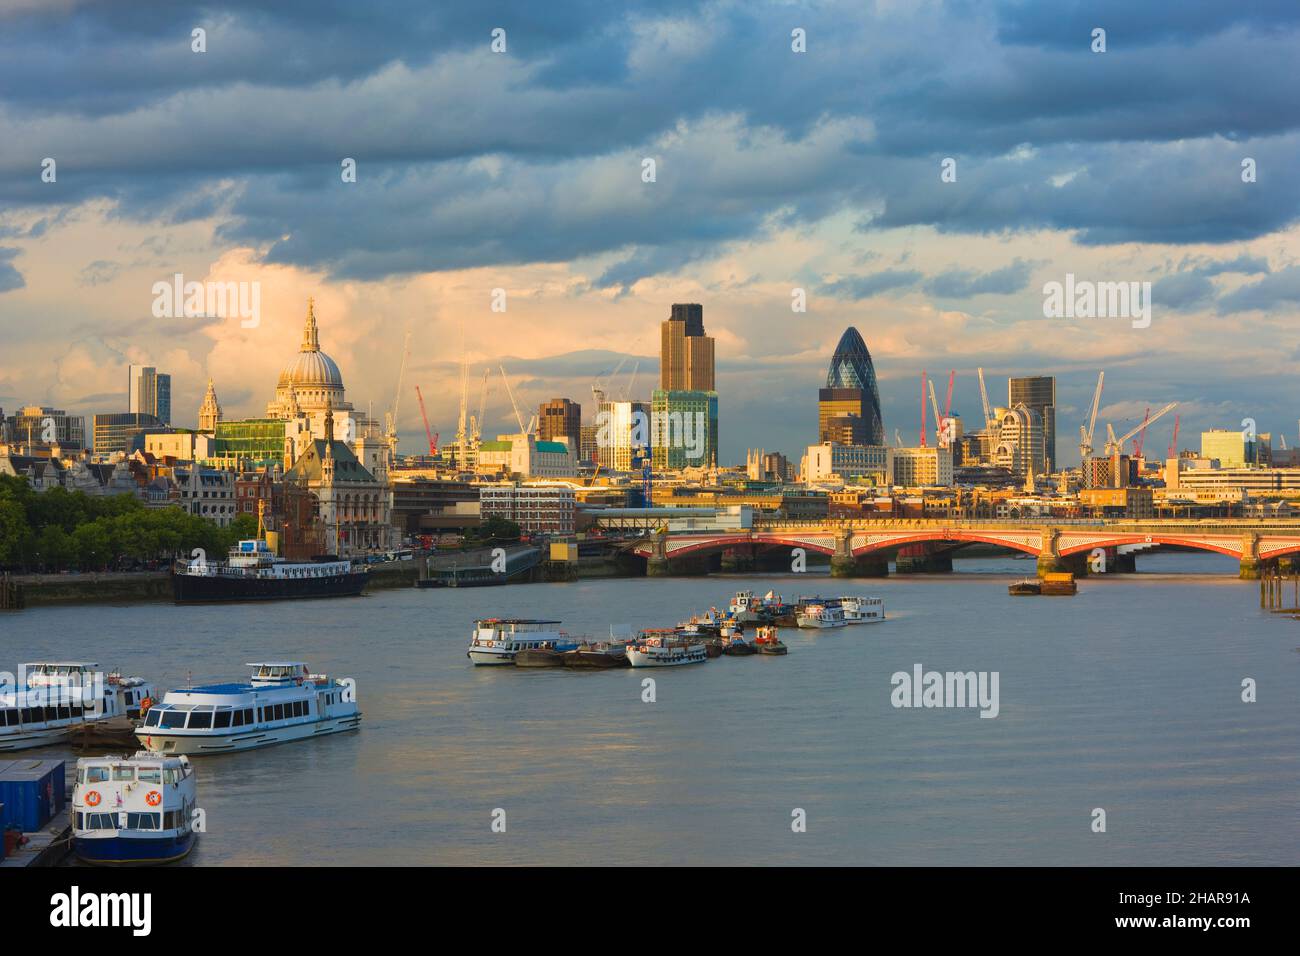 Paisaje urbano de Londres a lo largo del río Támesis, Londres, Reino Unido Foto de stock